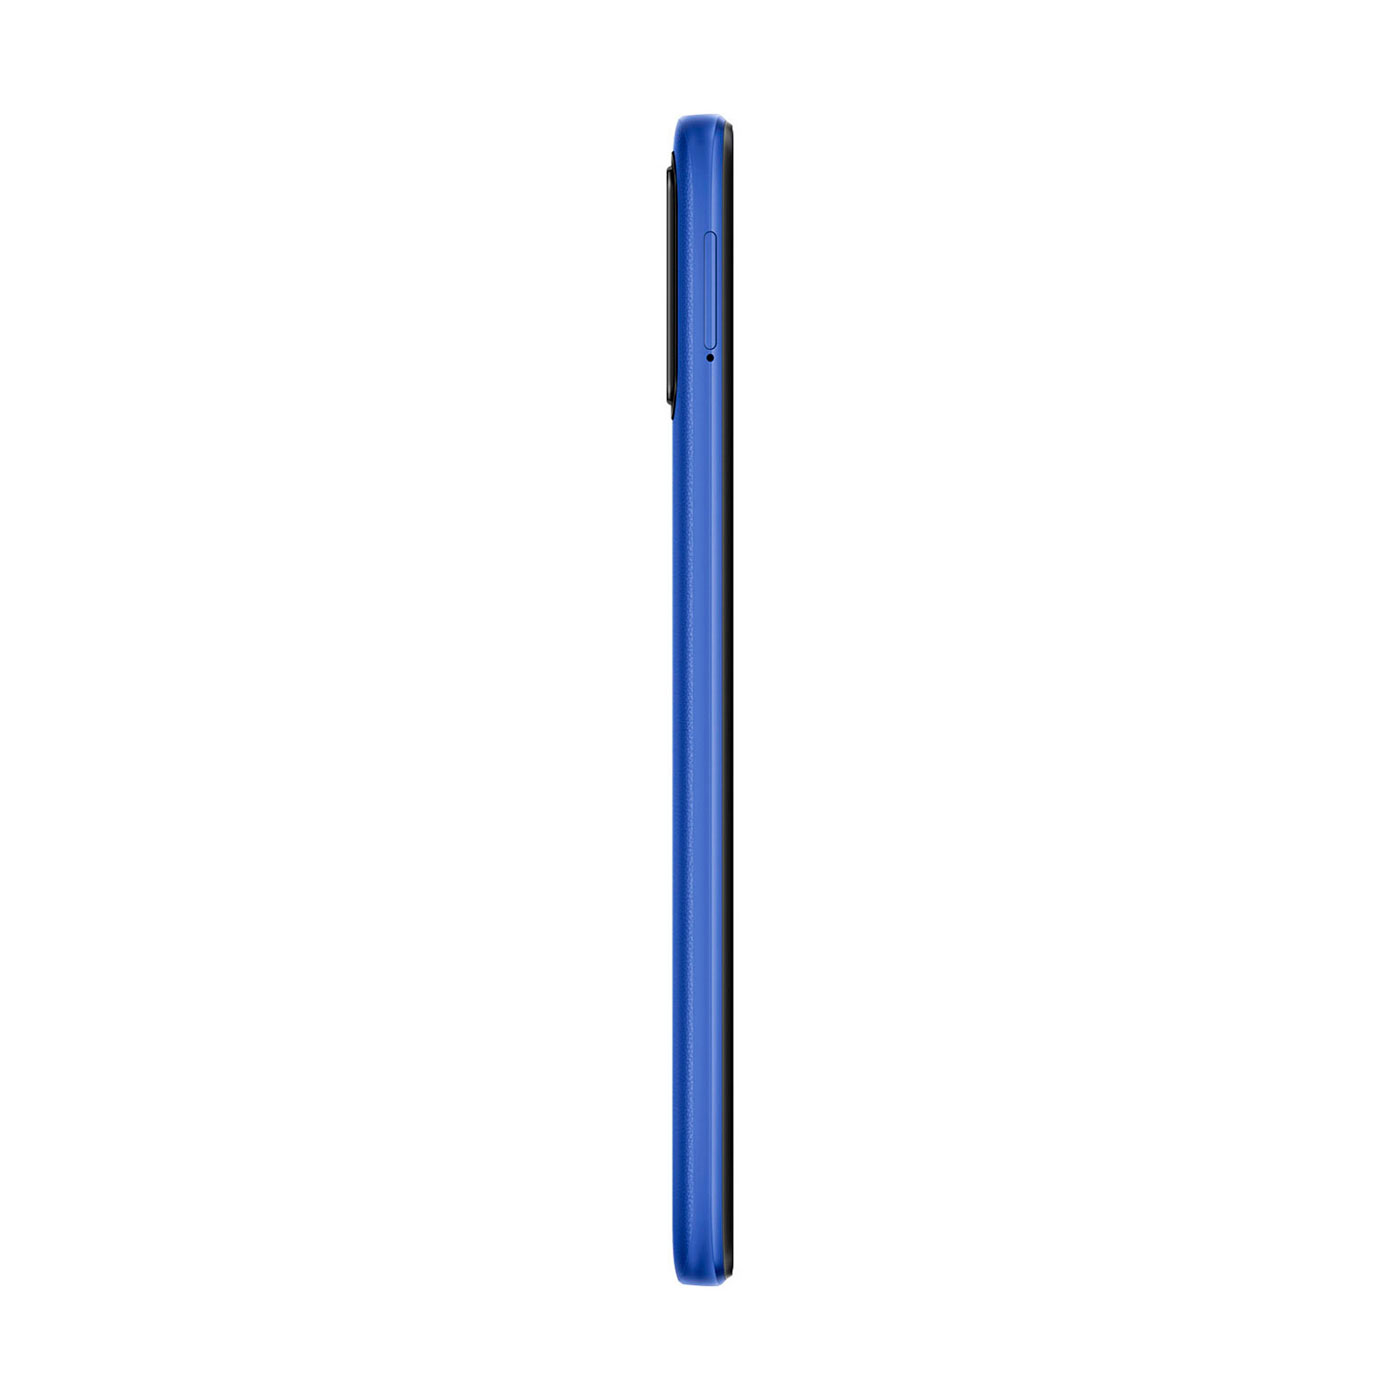 Celular XIAOMI Poco M3 128GB Azul